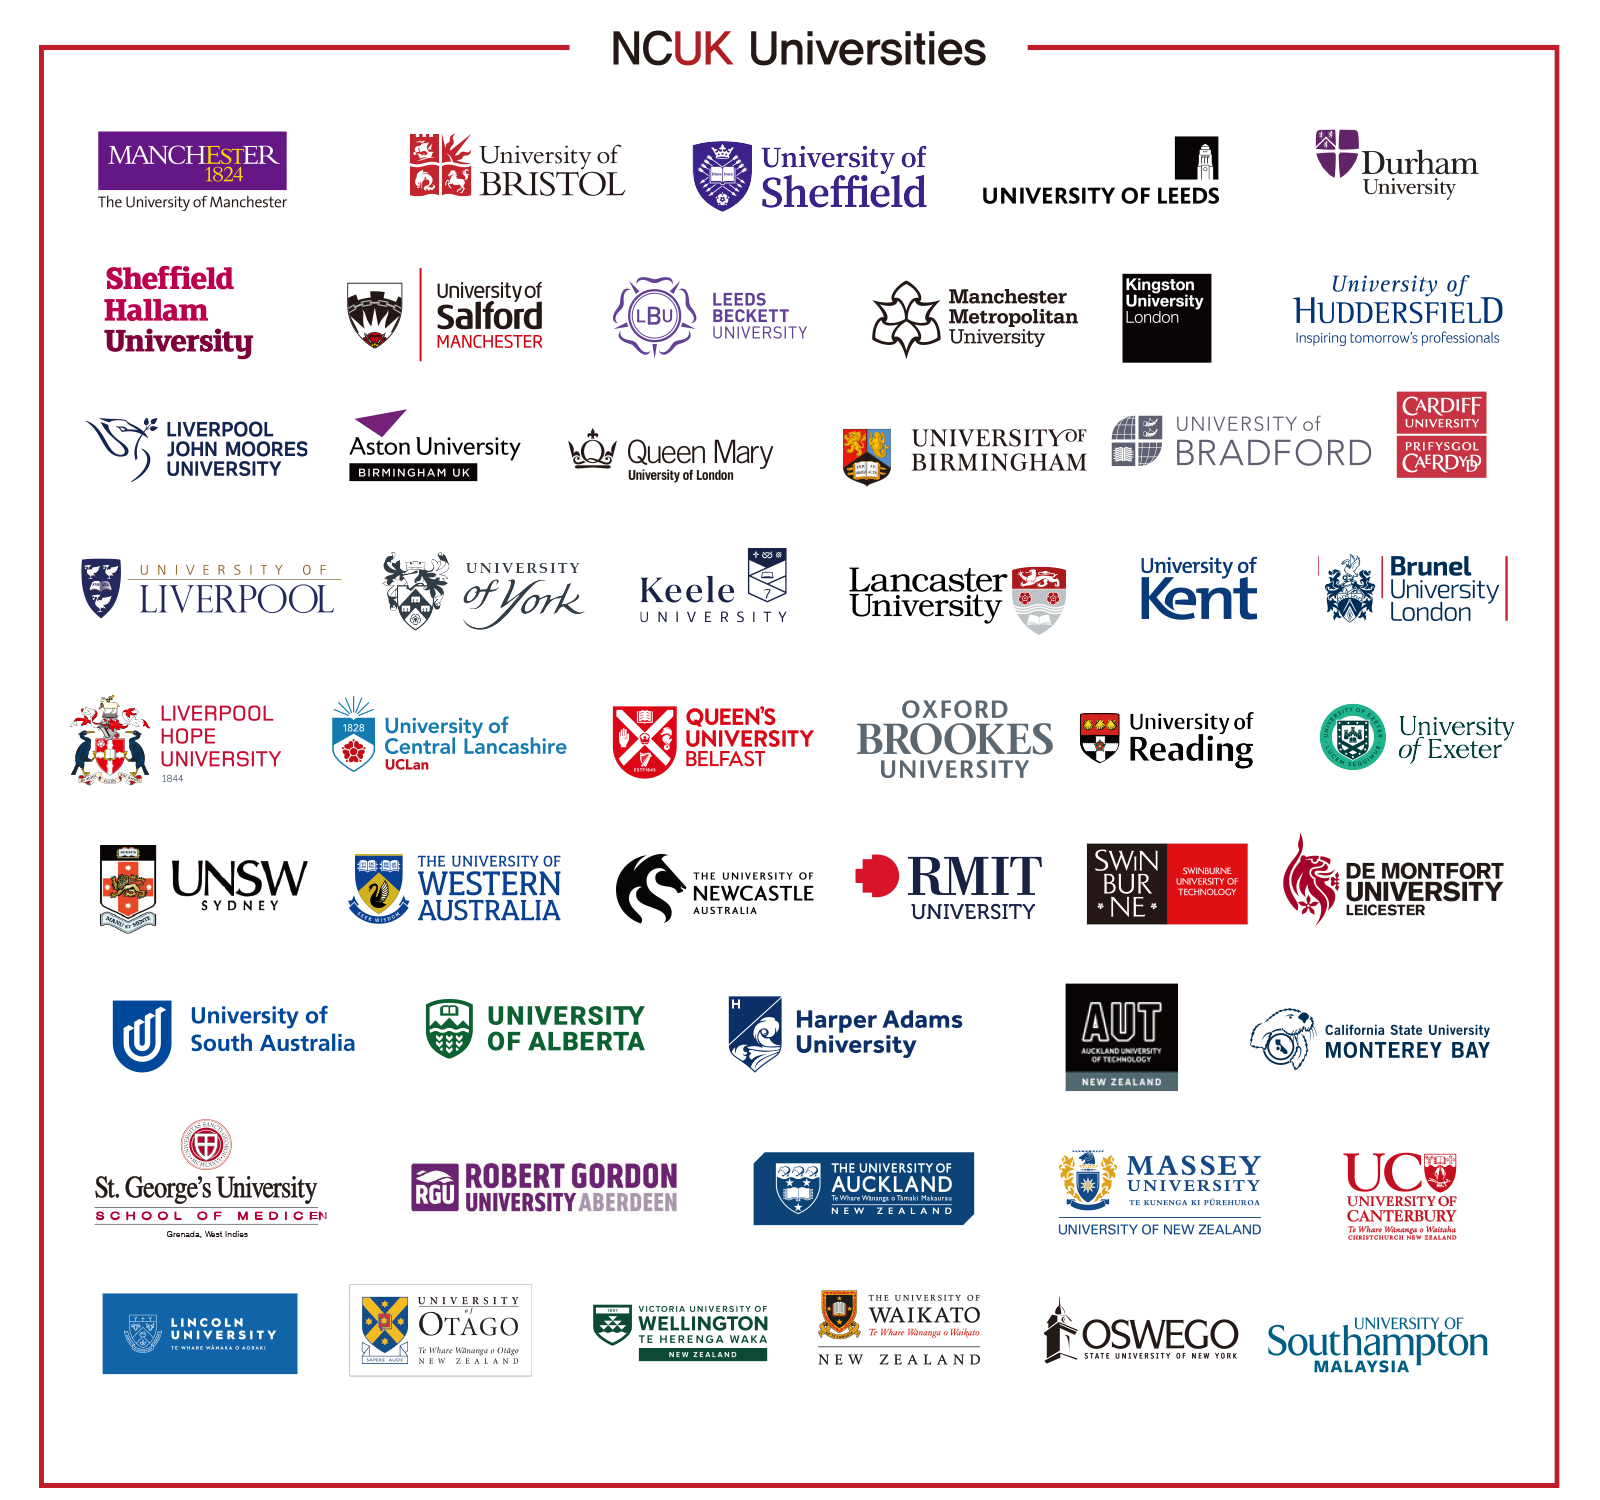 NCUK Universities